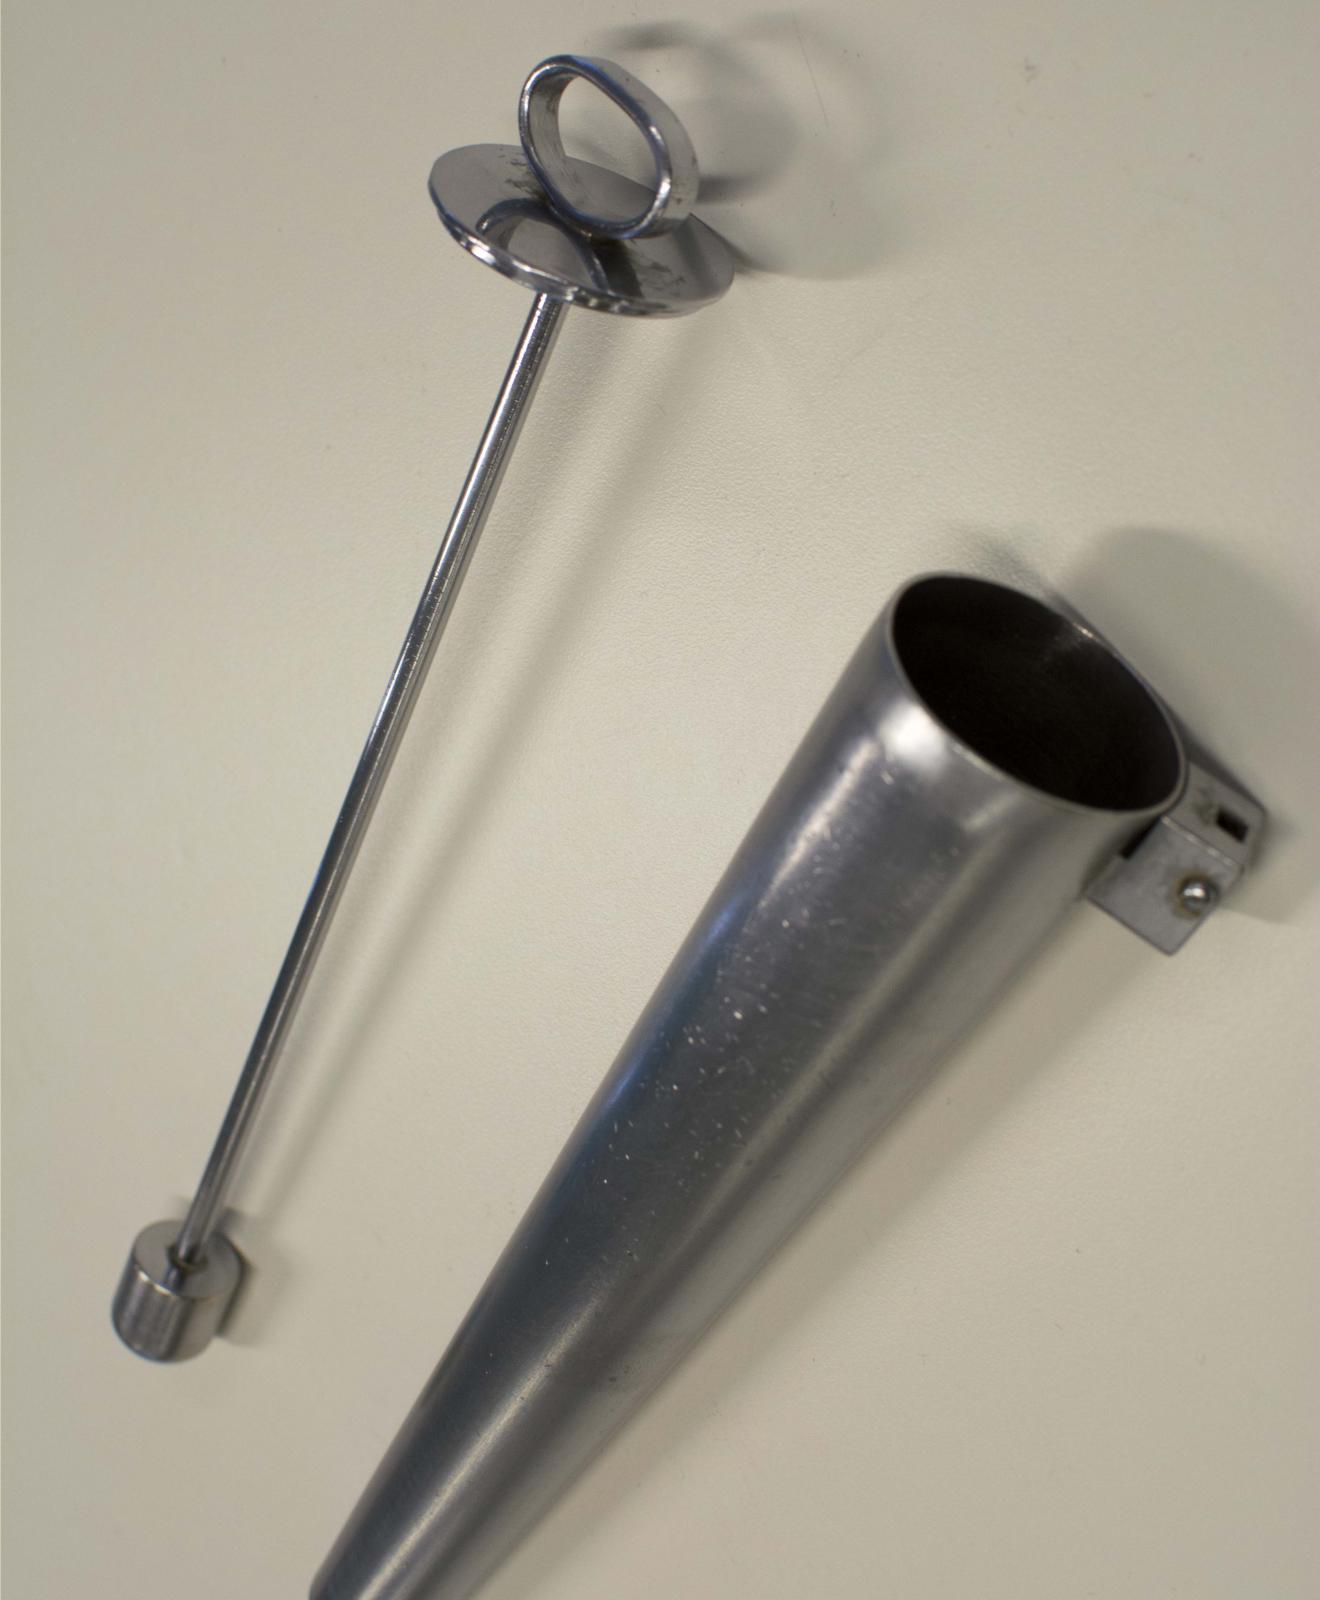 Instrumento metálico con forma de cono en cuyo interior se inserta una varilla con una anilla en un extremo y un tope cilíndrico también metálico en el opuesto